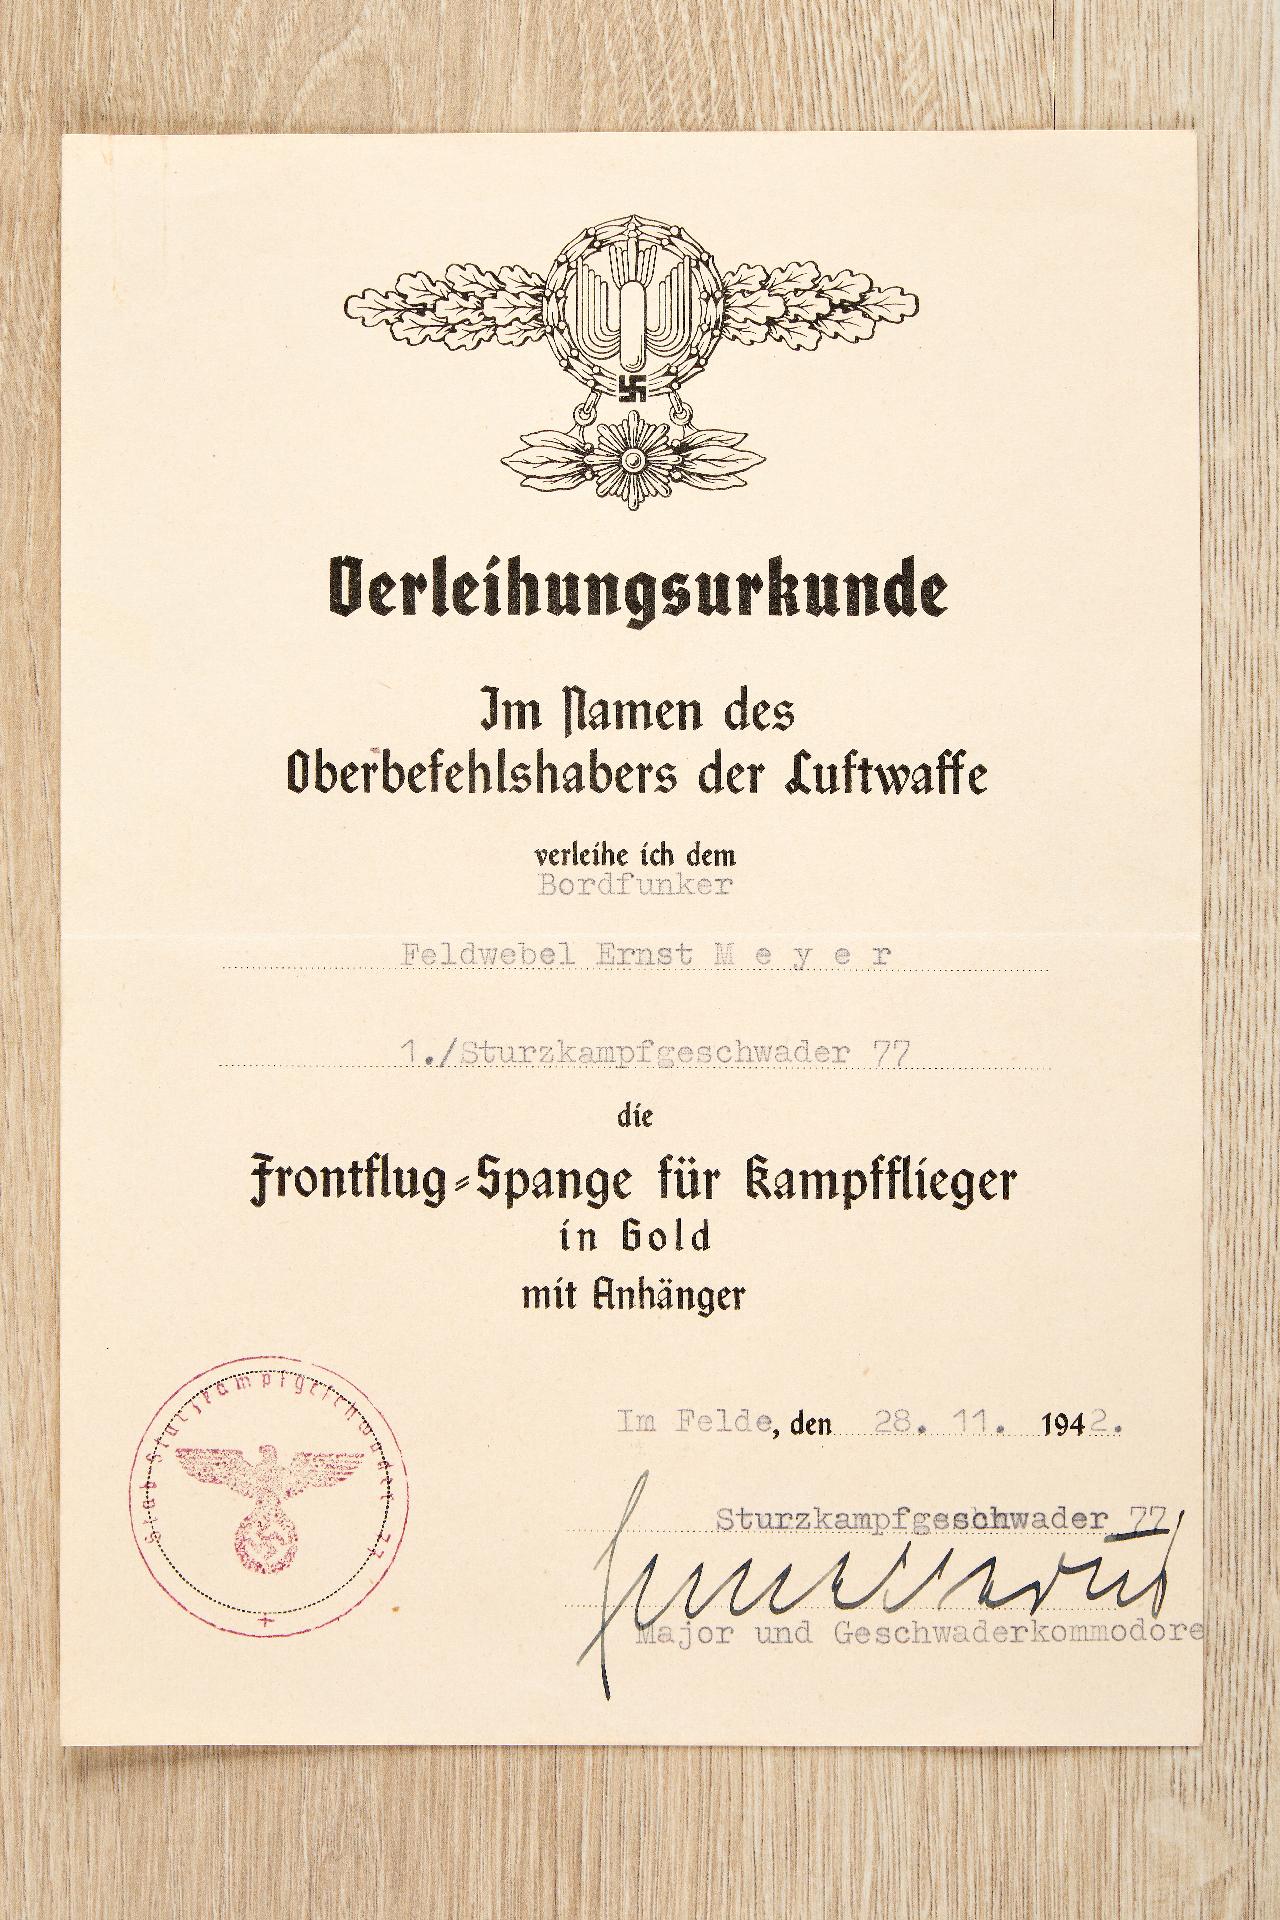 Allgemein : Nachlass des Feldwebels Ernst Meyer, 1./Sturzkampfgeschwader 77 - Image 31 of 55